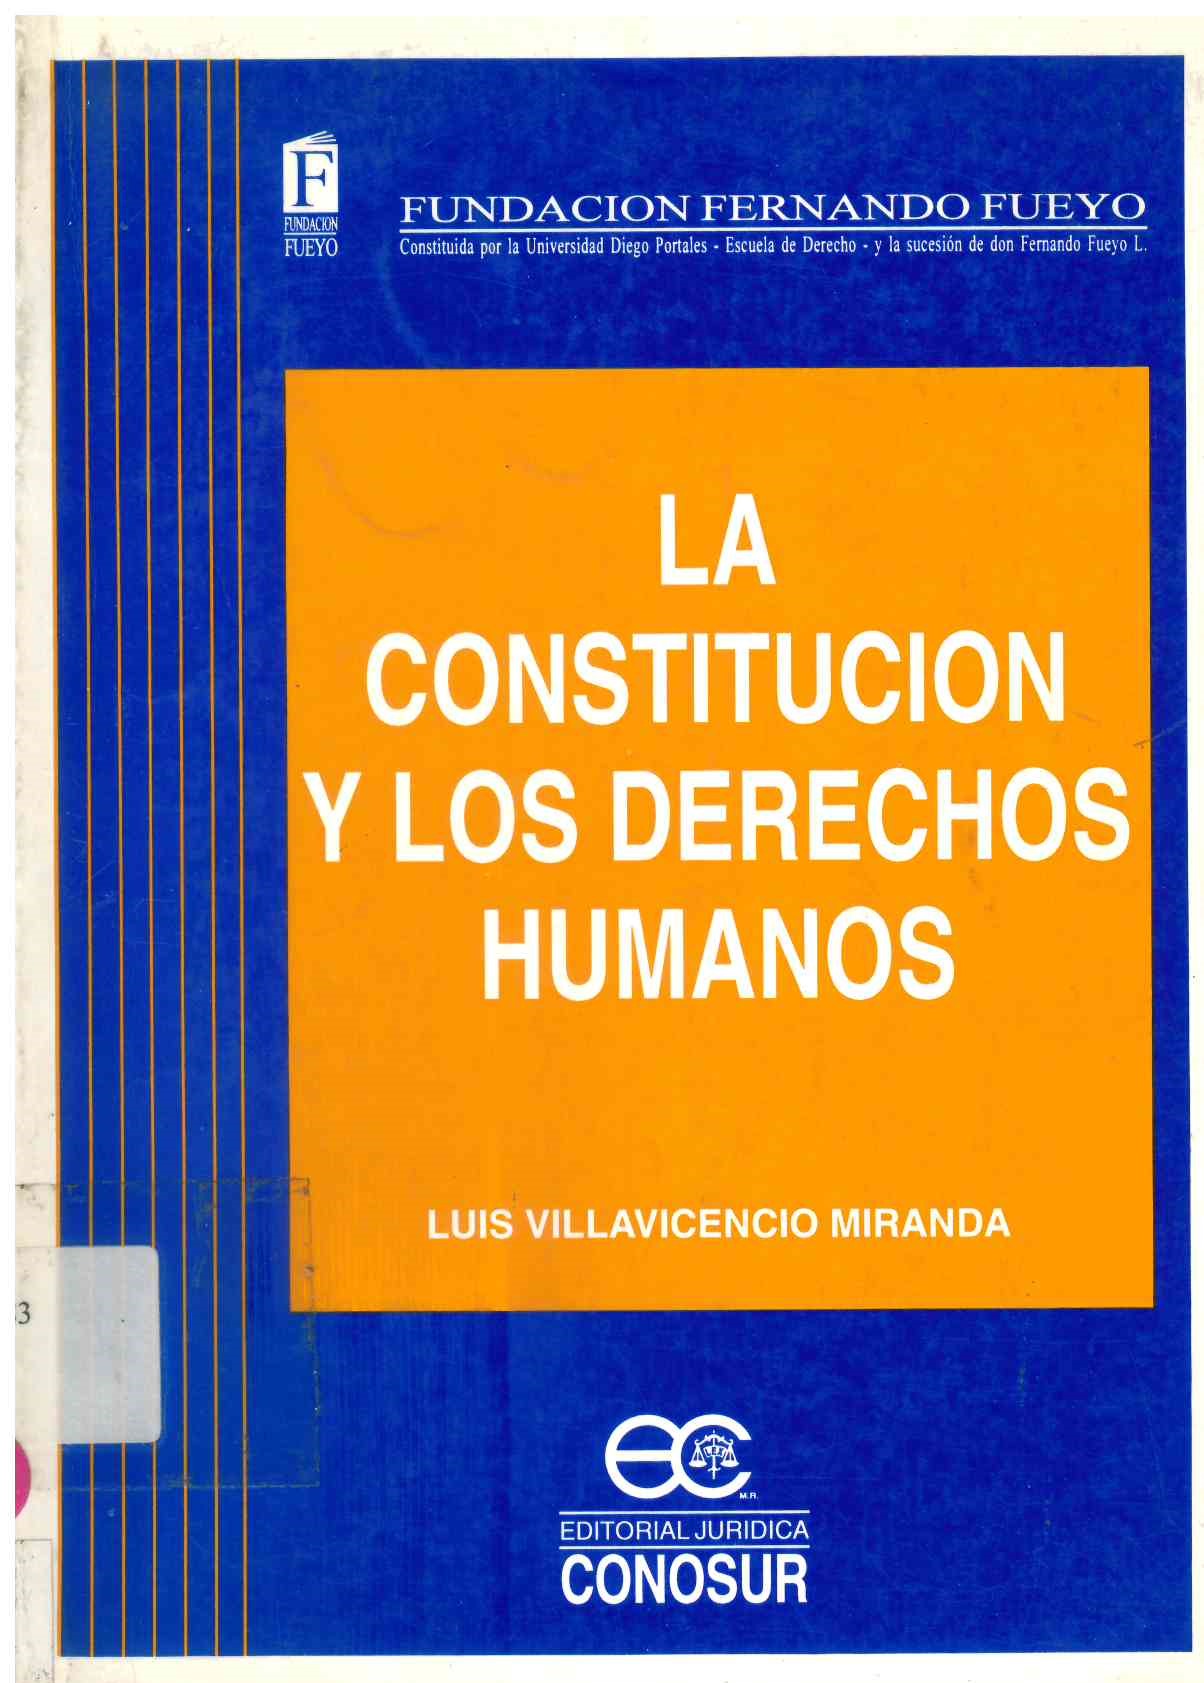 La Constitución y los derechos humanos